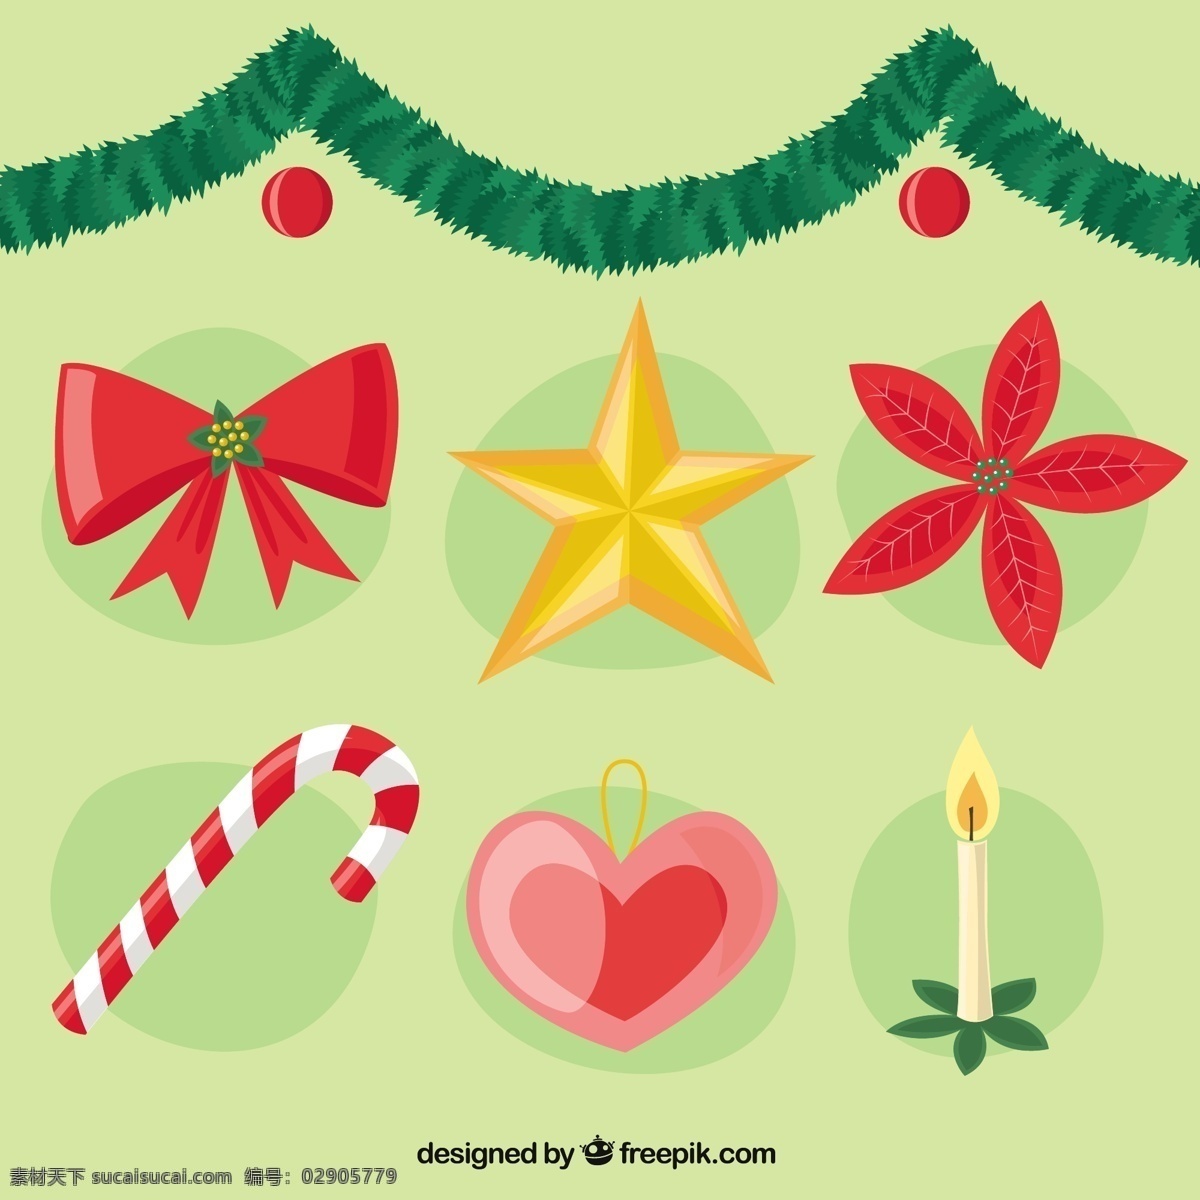 圣诞 装饰 种类 丝带 圣诞节 心 星 新的一年 新年快乐 圣诞快乐 冬天快乐 糖果 庆祝活动 新的节日 蜡烛 年 节日快乐 圣诞装饰 黄色